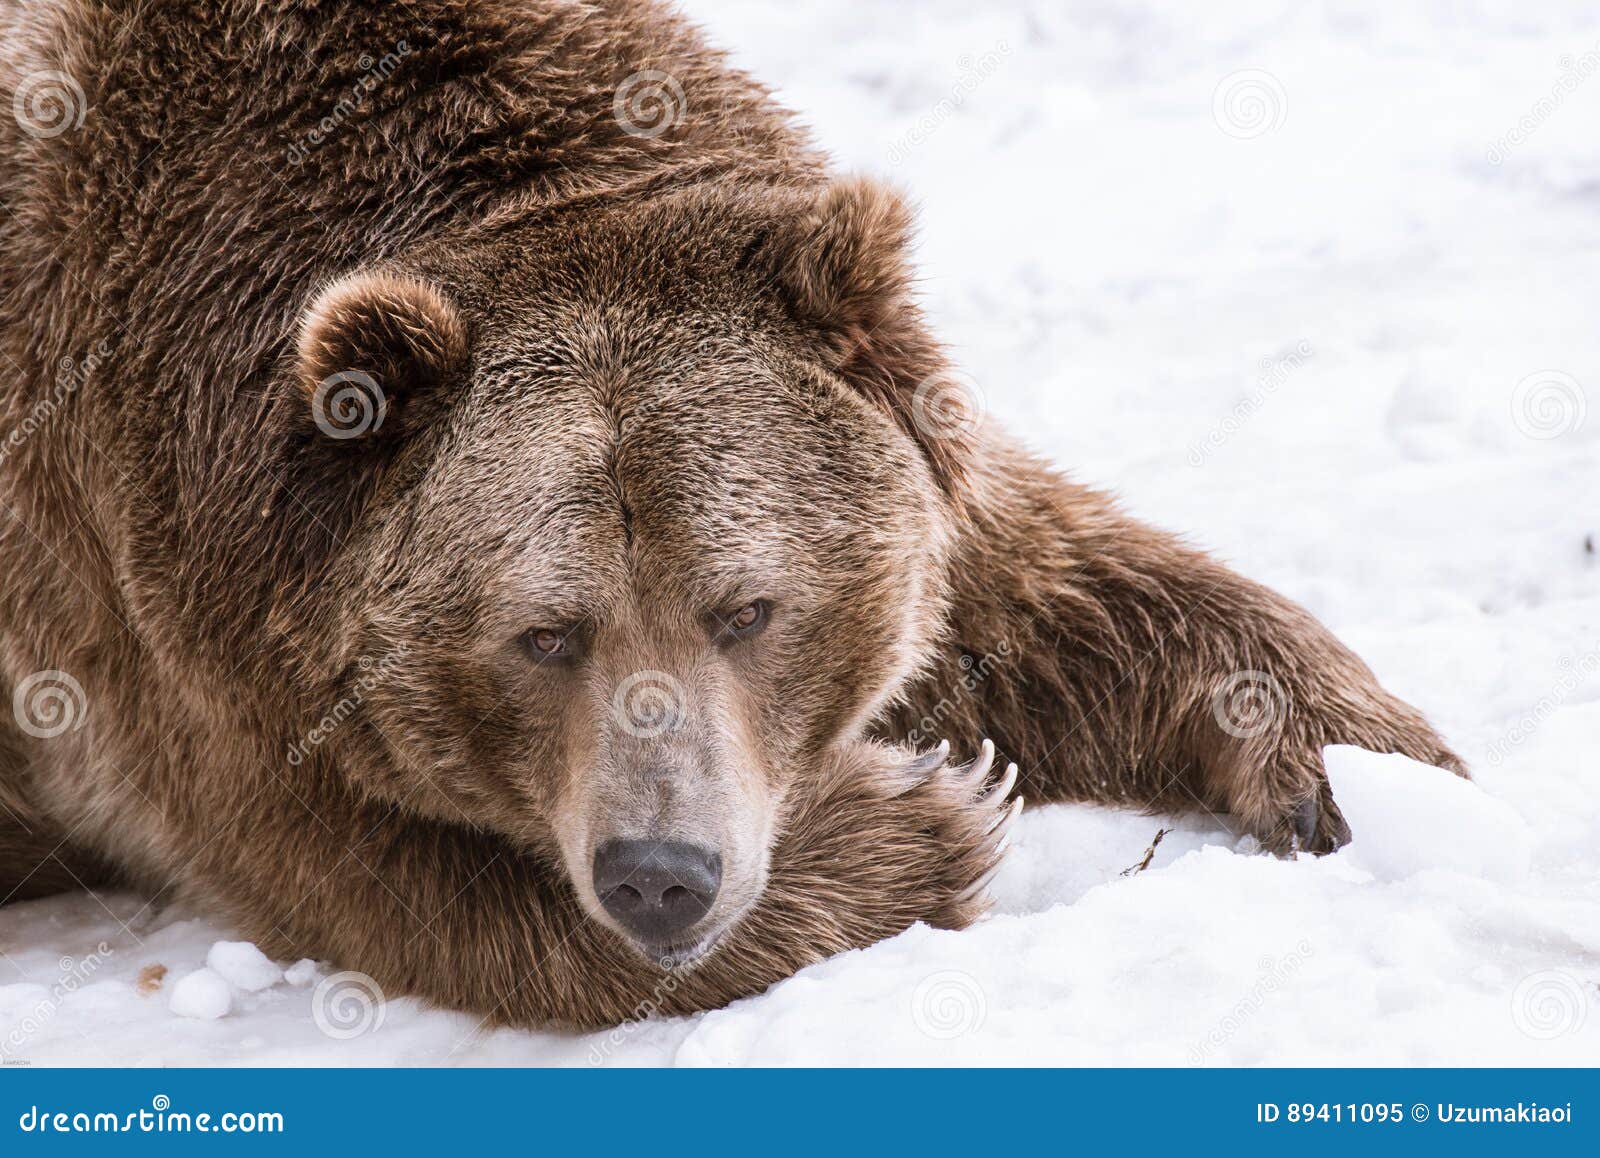 特写镜头北美灰熊在与雪生活styleeat戏剧冷颤的冬天. 特写镜头北美灰熊在雪的冬天